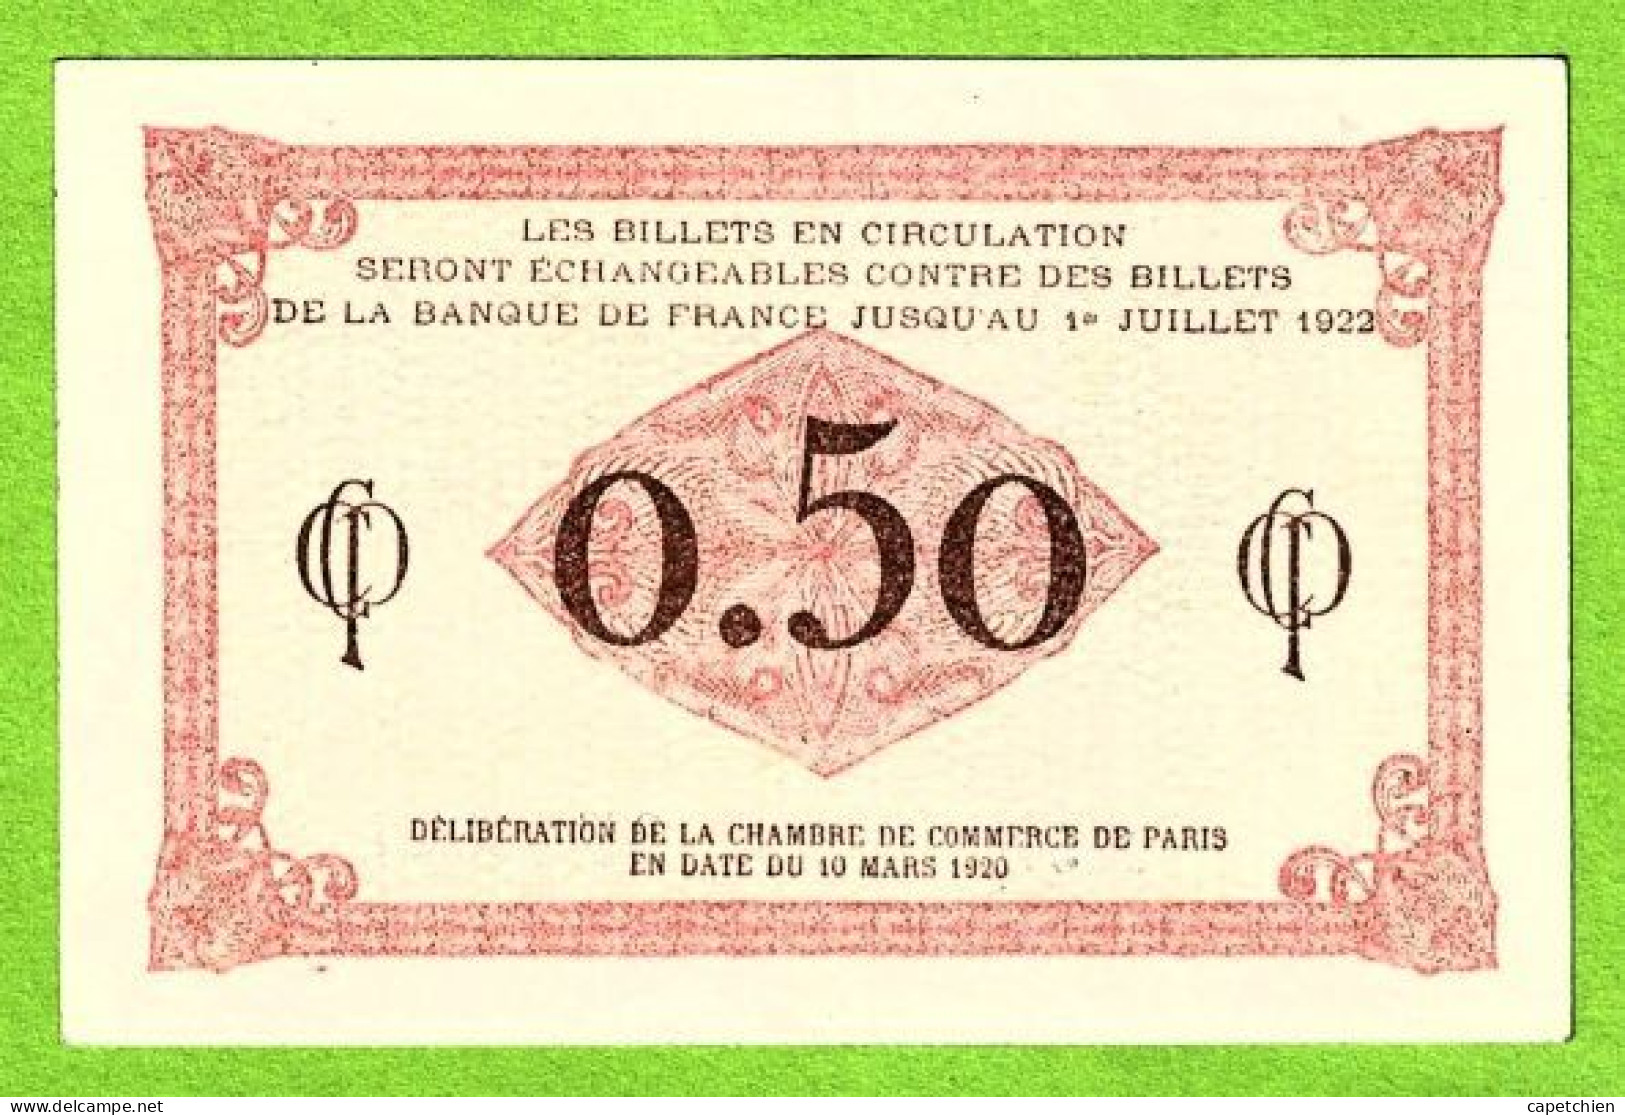 FRANCE / CHAMBRE De COMMERCE De PARIS / 50 CENT. / 10 MARS 1920 / N° 071,881 / SERIE F 37 / NEUF - Chambre De Commerce